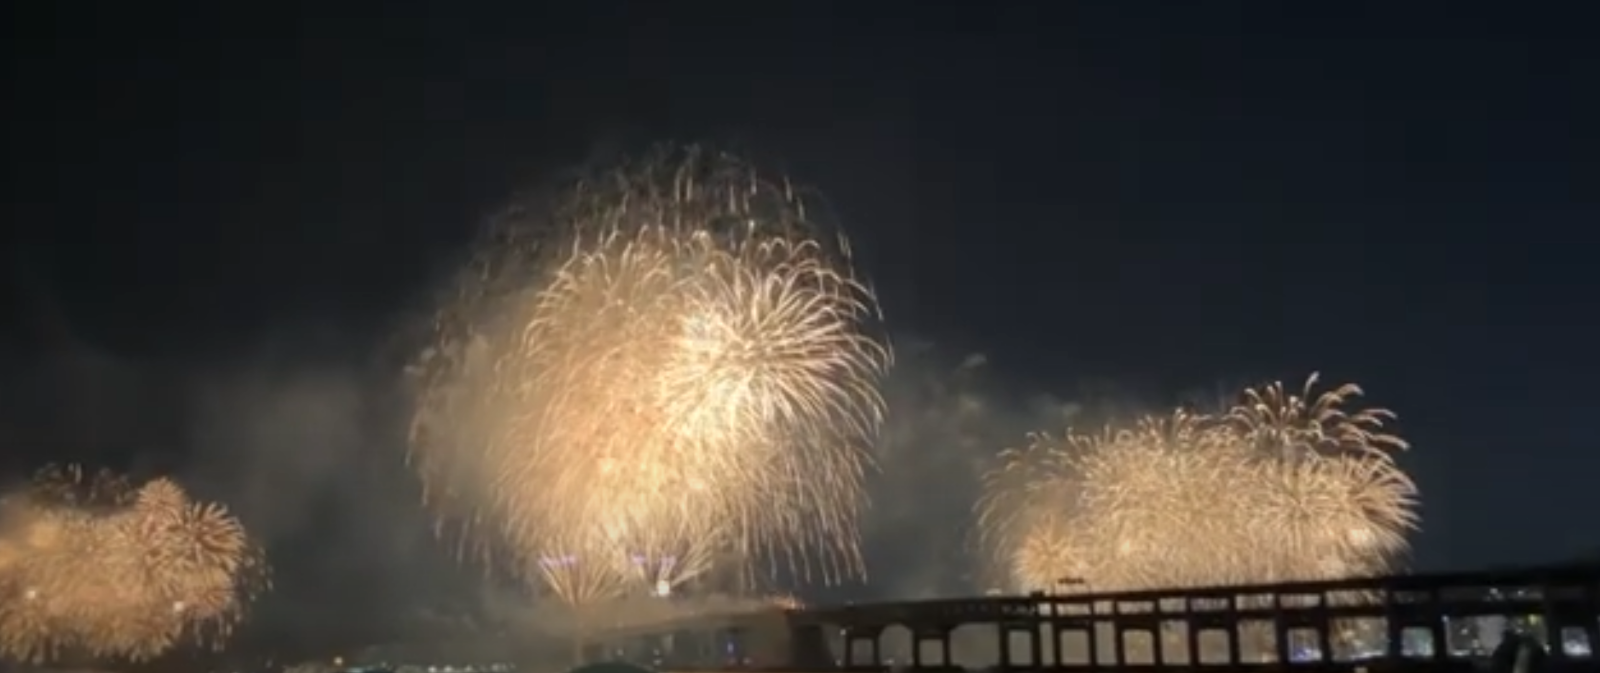 부산 불꽃축제 2023 일정 - 명당 마린시티에서 본 불꽃축제 사진